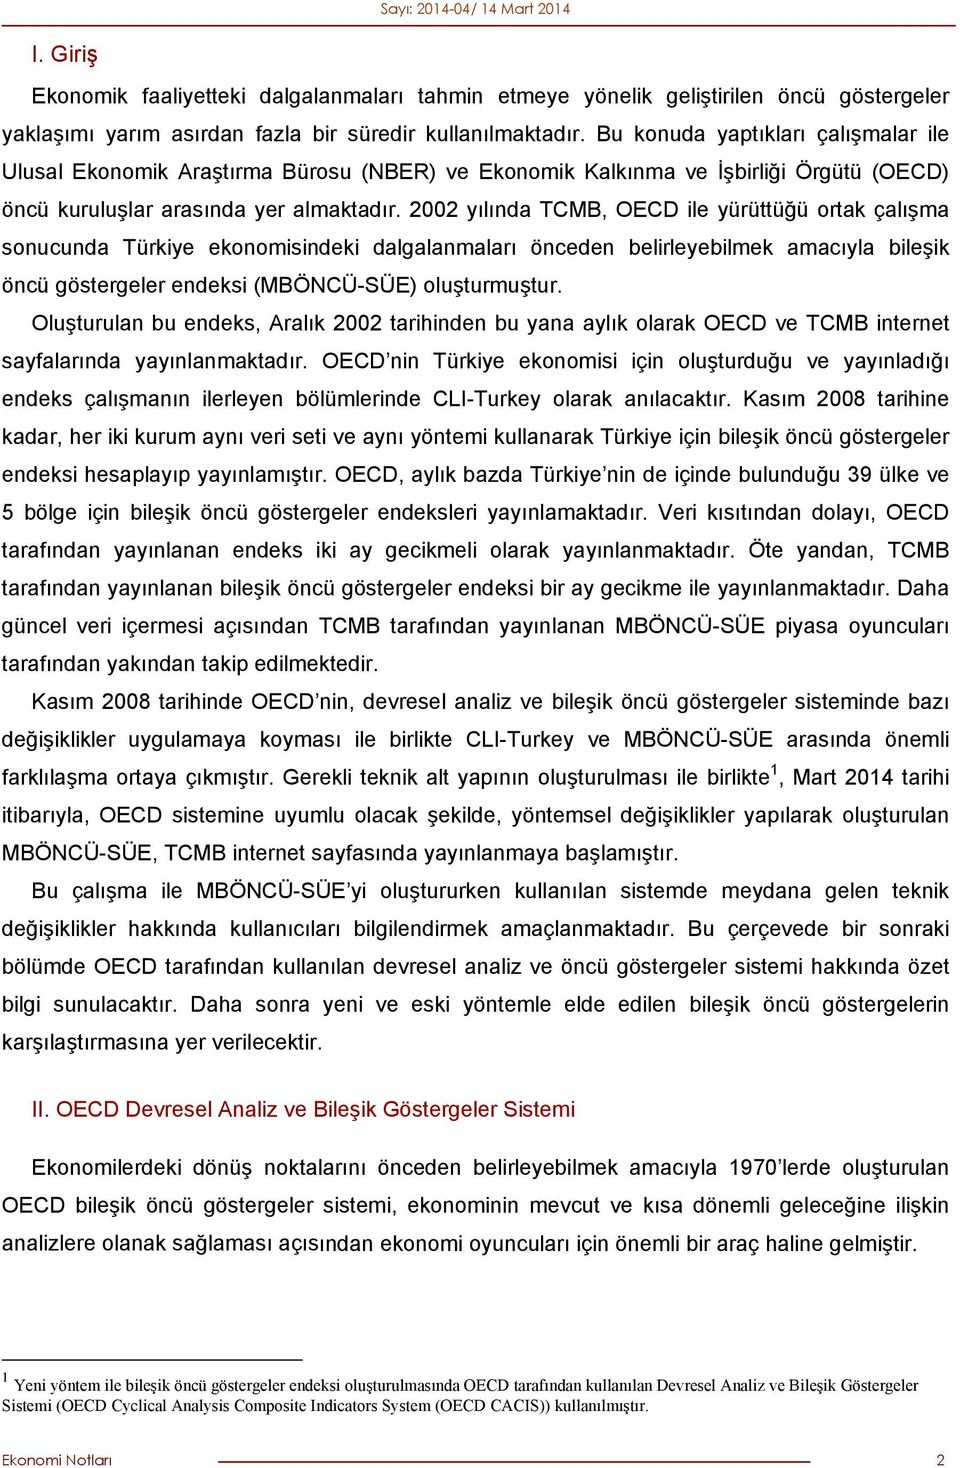 2002 yılında TCMB, OECD ile yürüttüğü ortak çalışma sonucunda Türkiye ekonomisindeki dalgalanmaları önceden belirleyebilmek amacıyla bileşik öncü göstergeler endeksi (MBÖNCÜ-SÜE) oluşturmuştur.